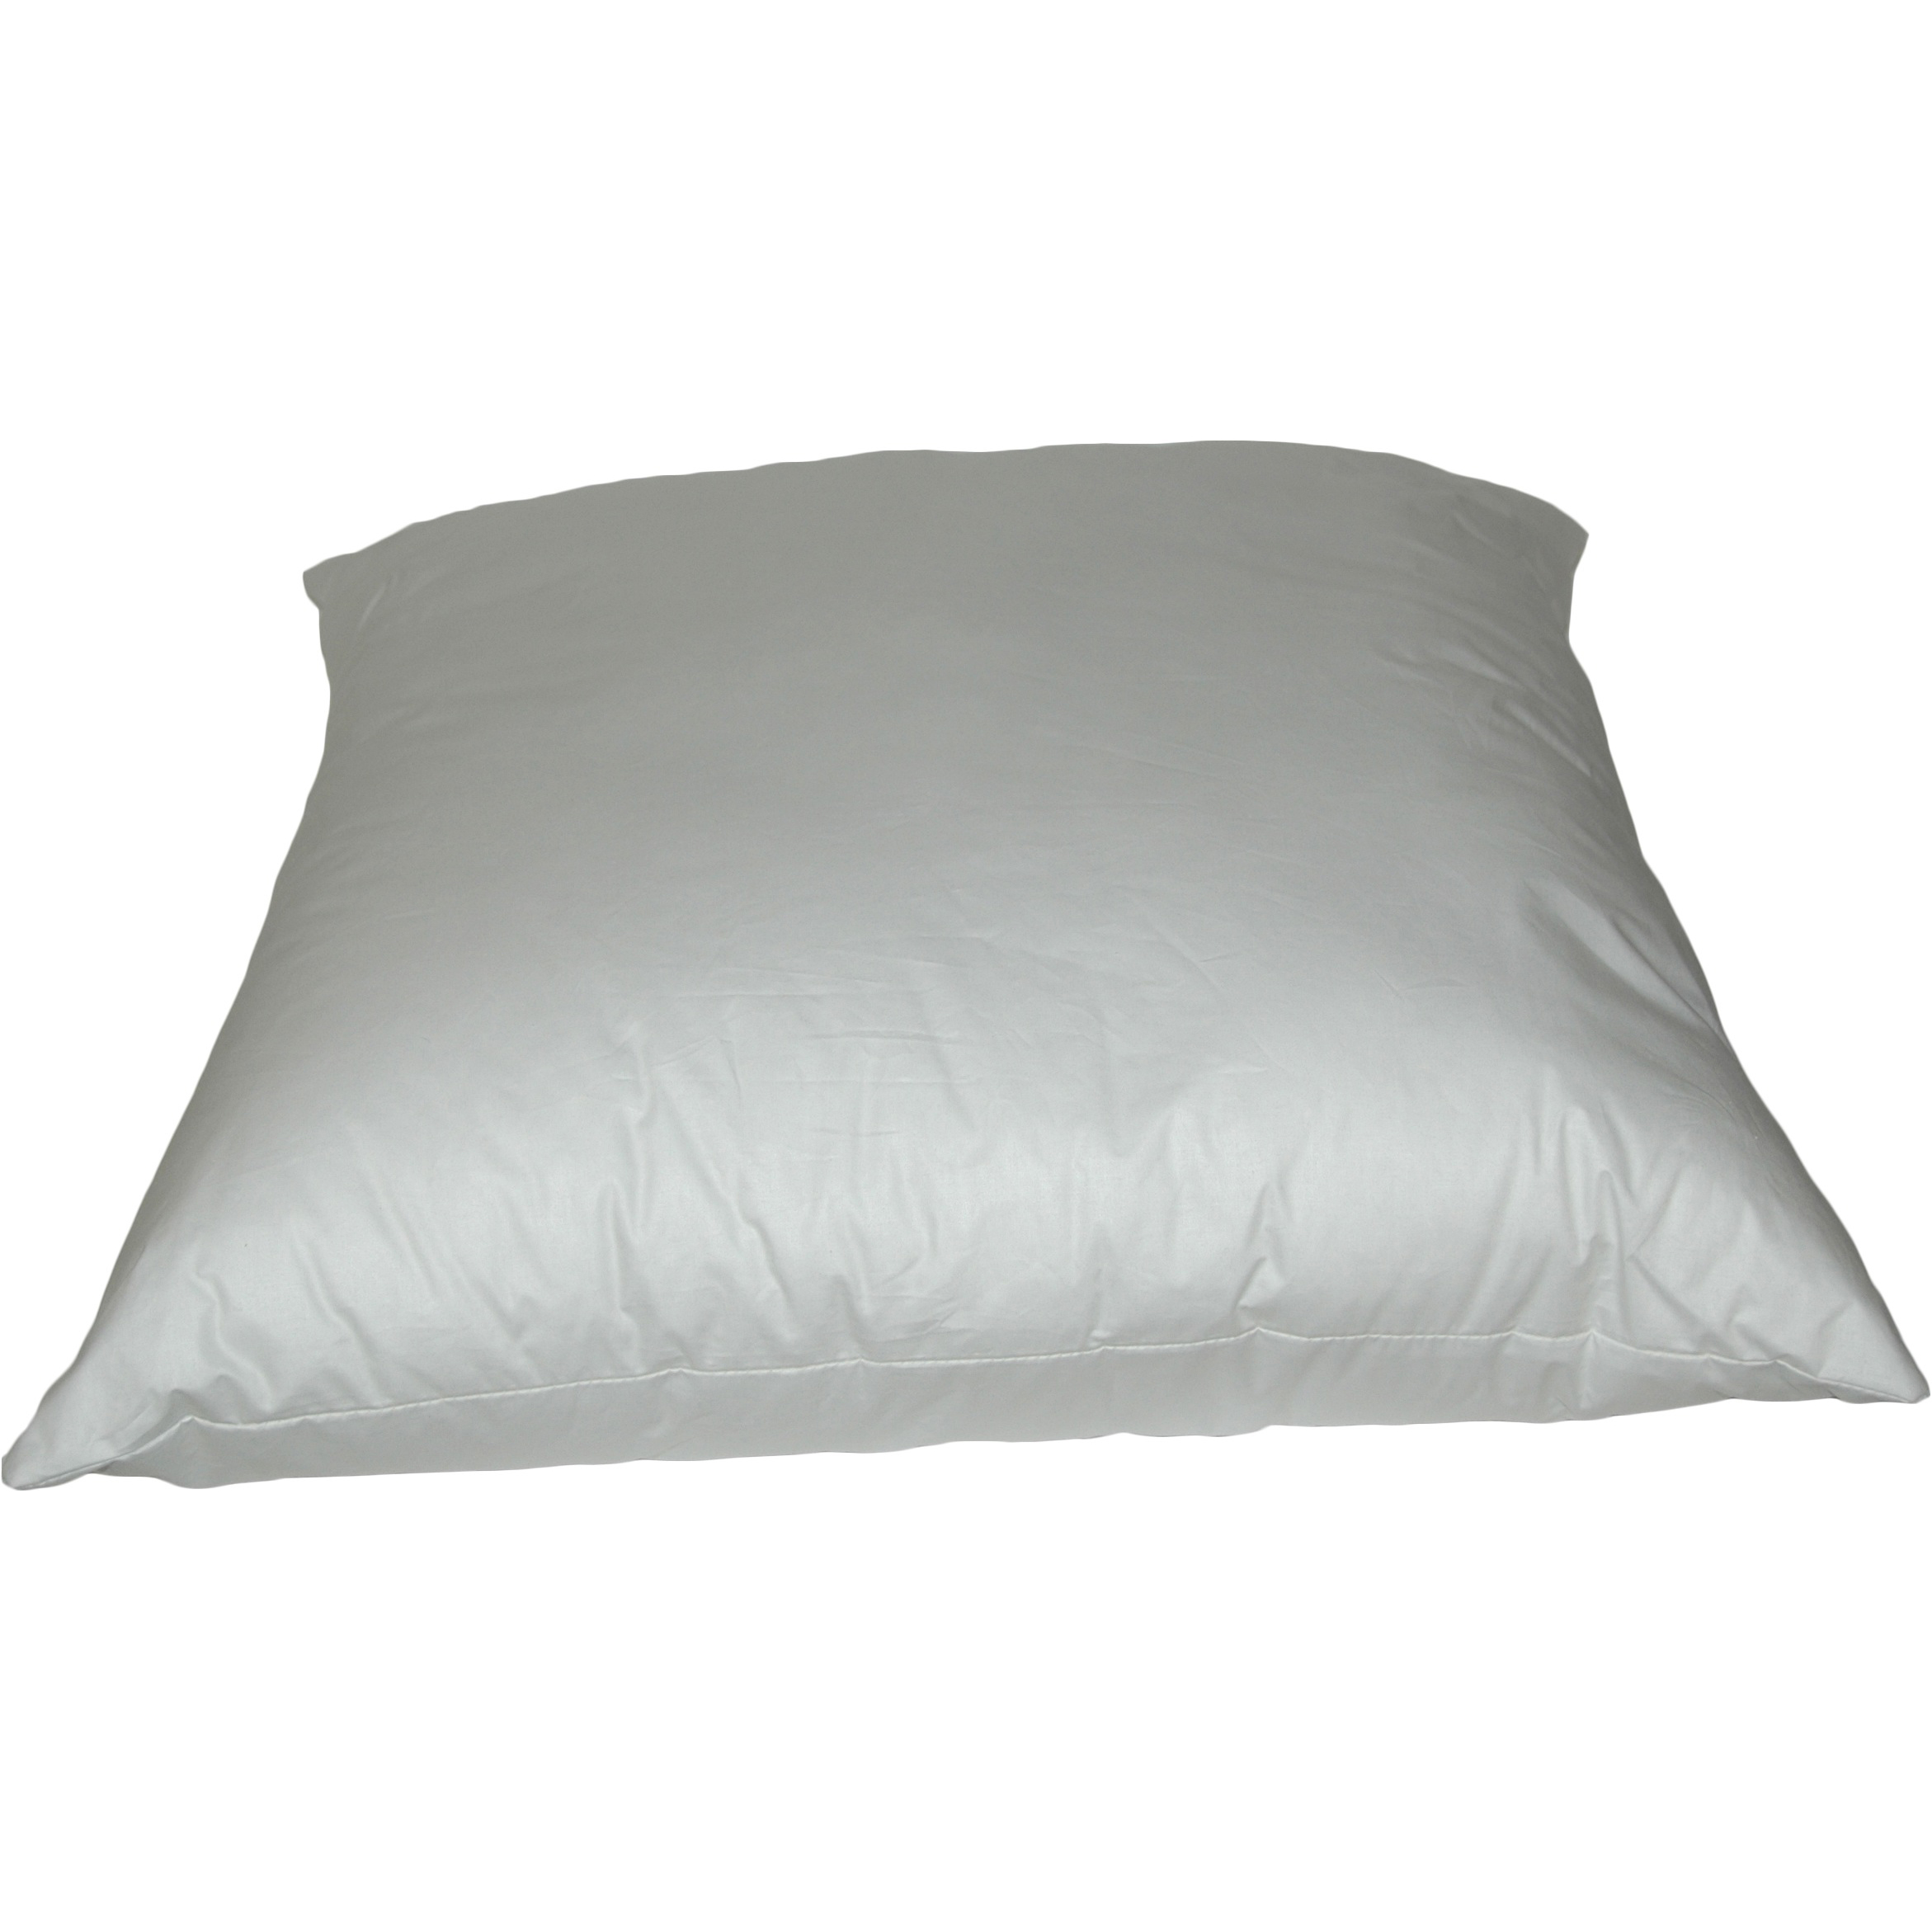 Rectangular K-Fiber Pillows 20x30 inch